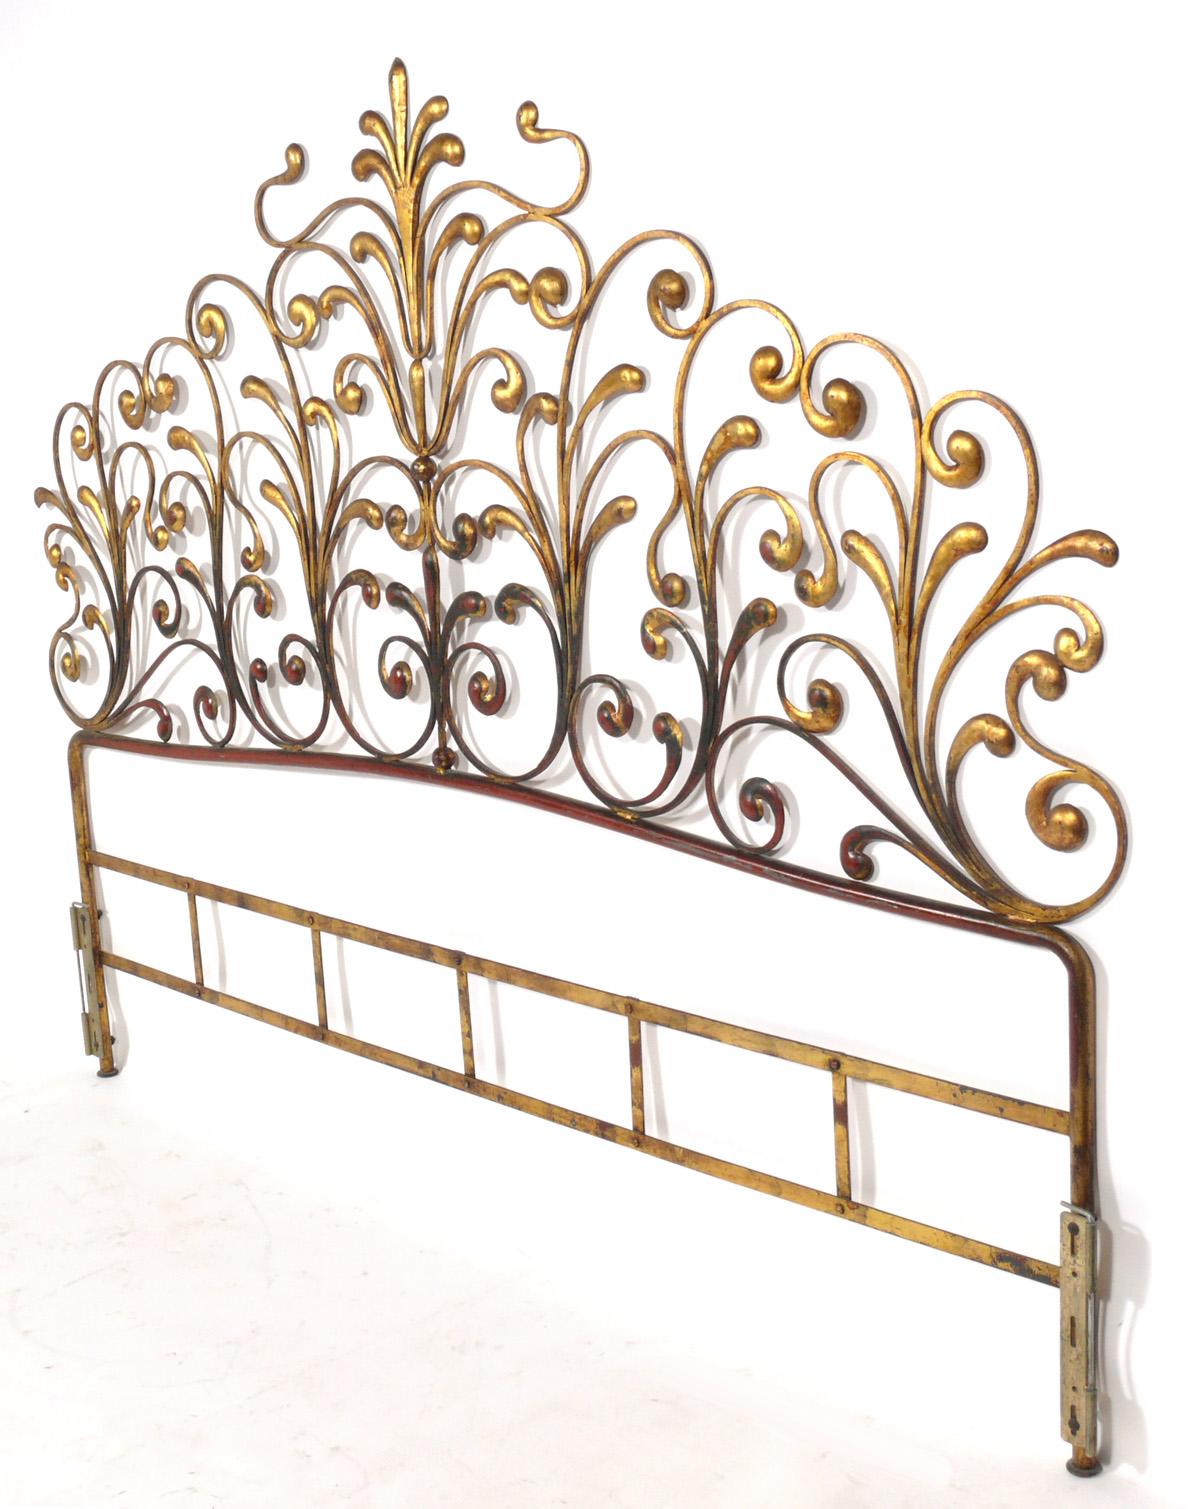 Tête de lit glamour en métal doré, italien, vers les années 1950. Il a conservé sa finition dorée d'origine avec une magnifique patine, avec une certaine usure générale du cadre en métal doré, exposant la sous-couche de couleur rouge chinoise ou